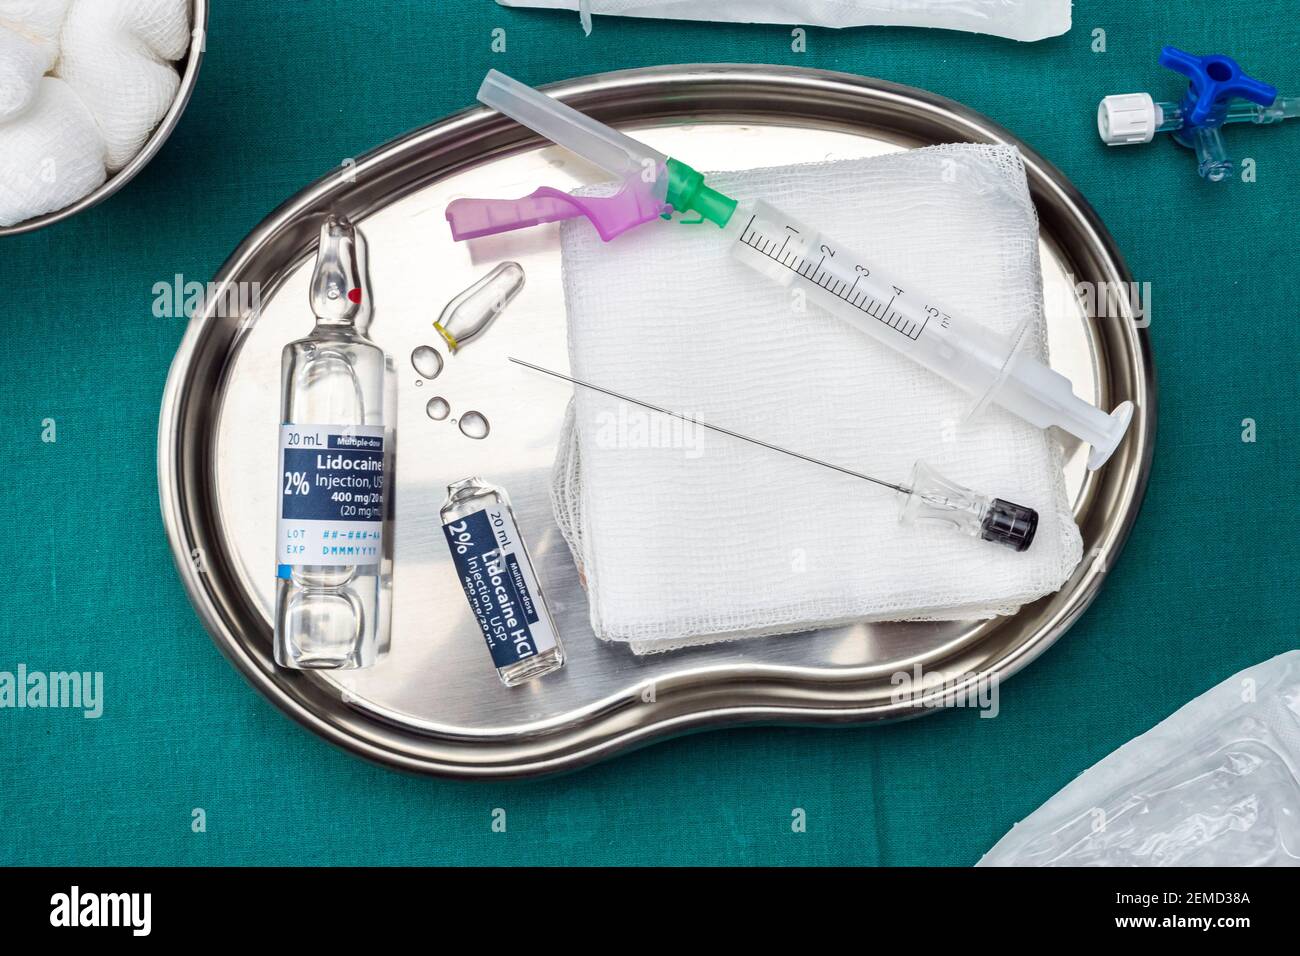 Flacons avec inexplicado anesthésie préparés pour une opération dans une salle d'opération, image conceptuelle Banque D'Images